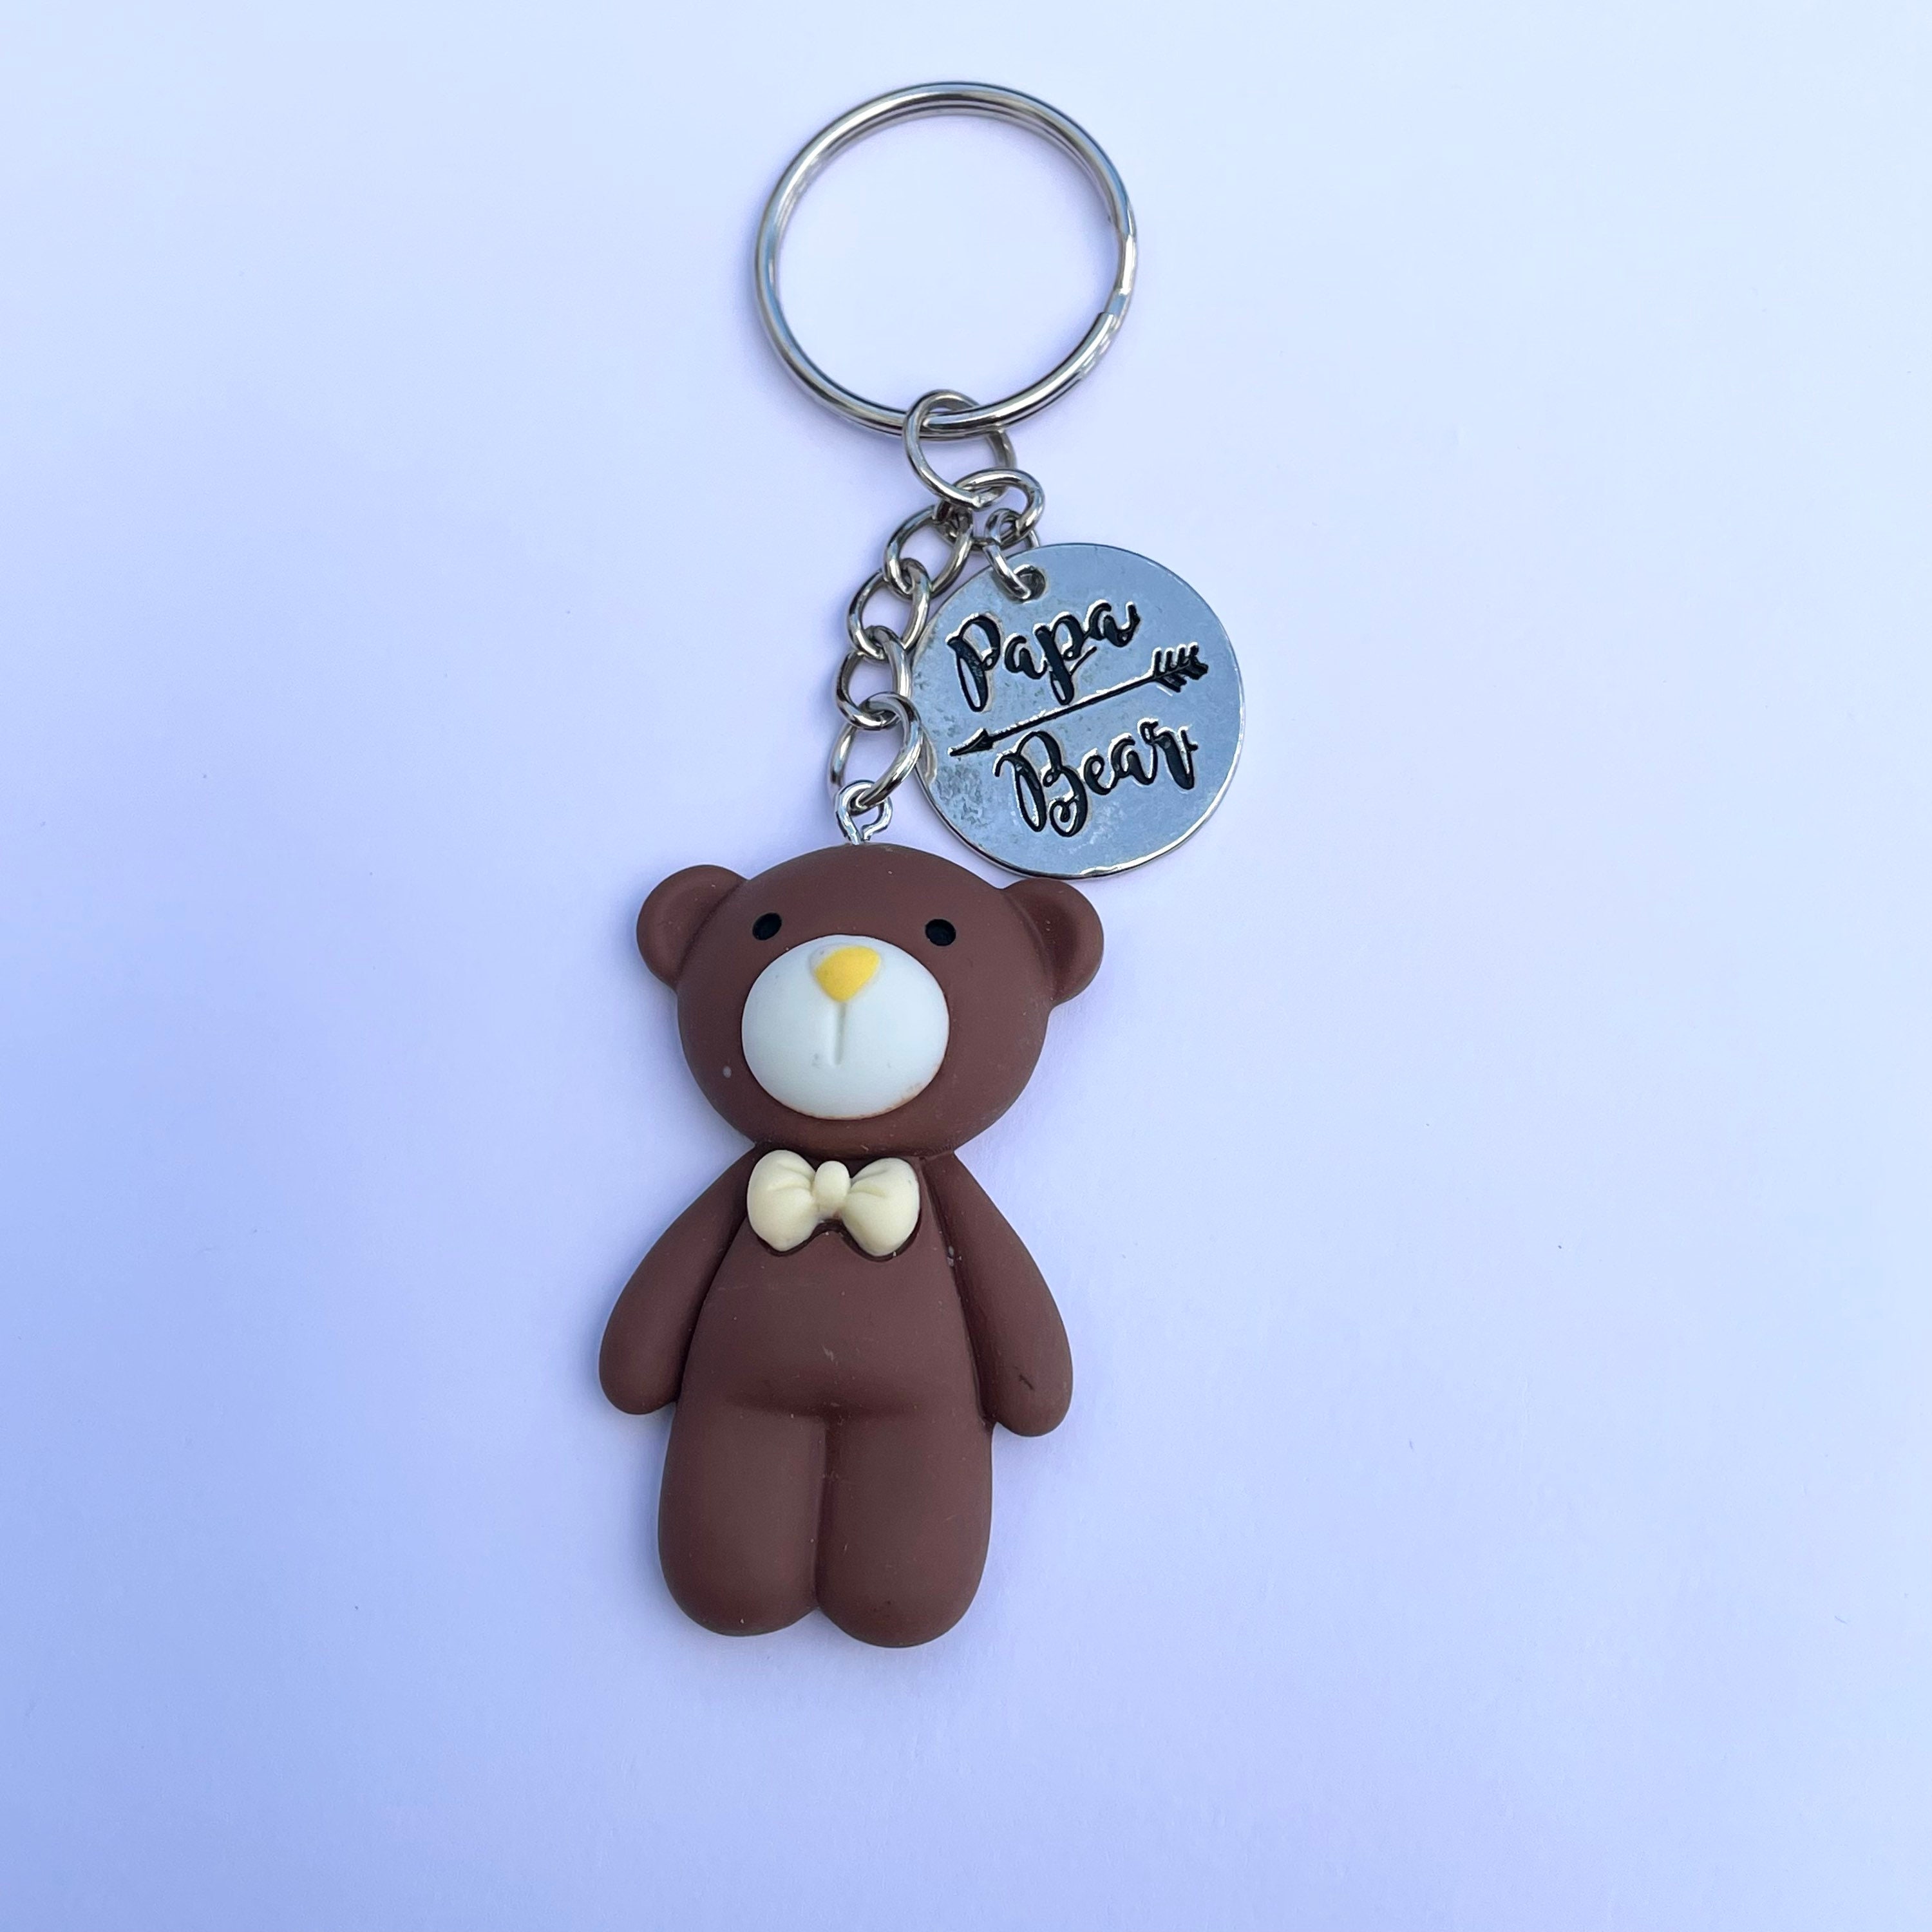 Miss A Glitter Teddy Bear Keychain Grey